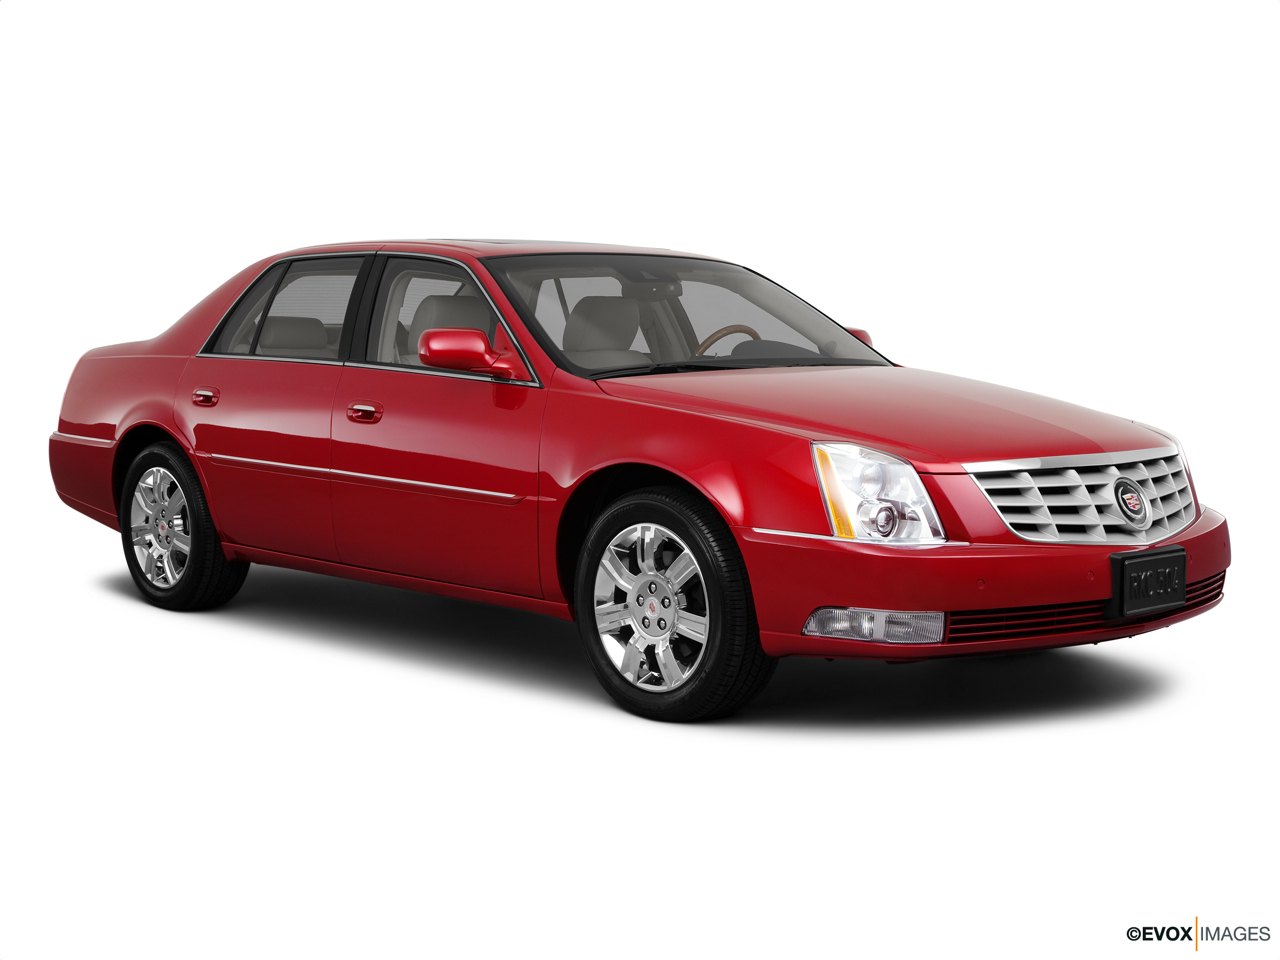 2011 Cadillac DTS Platinum 158 - no description